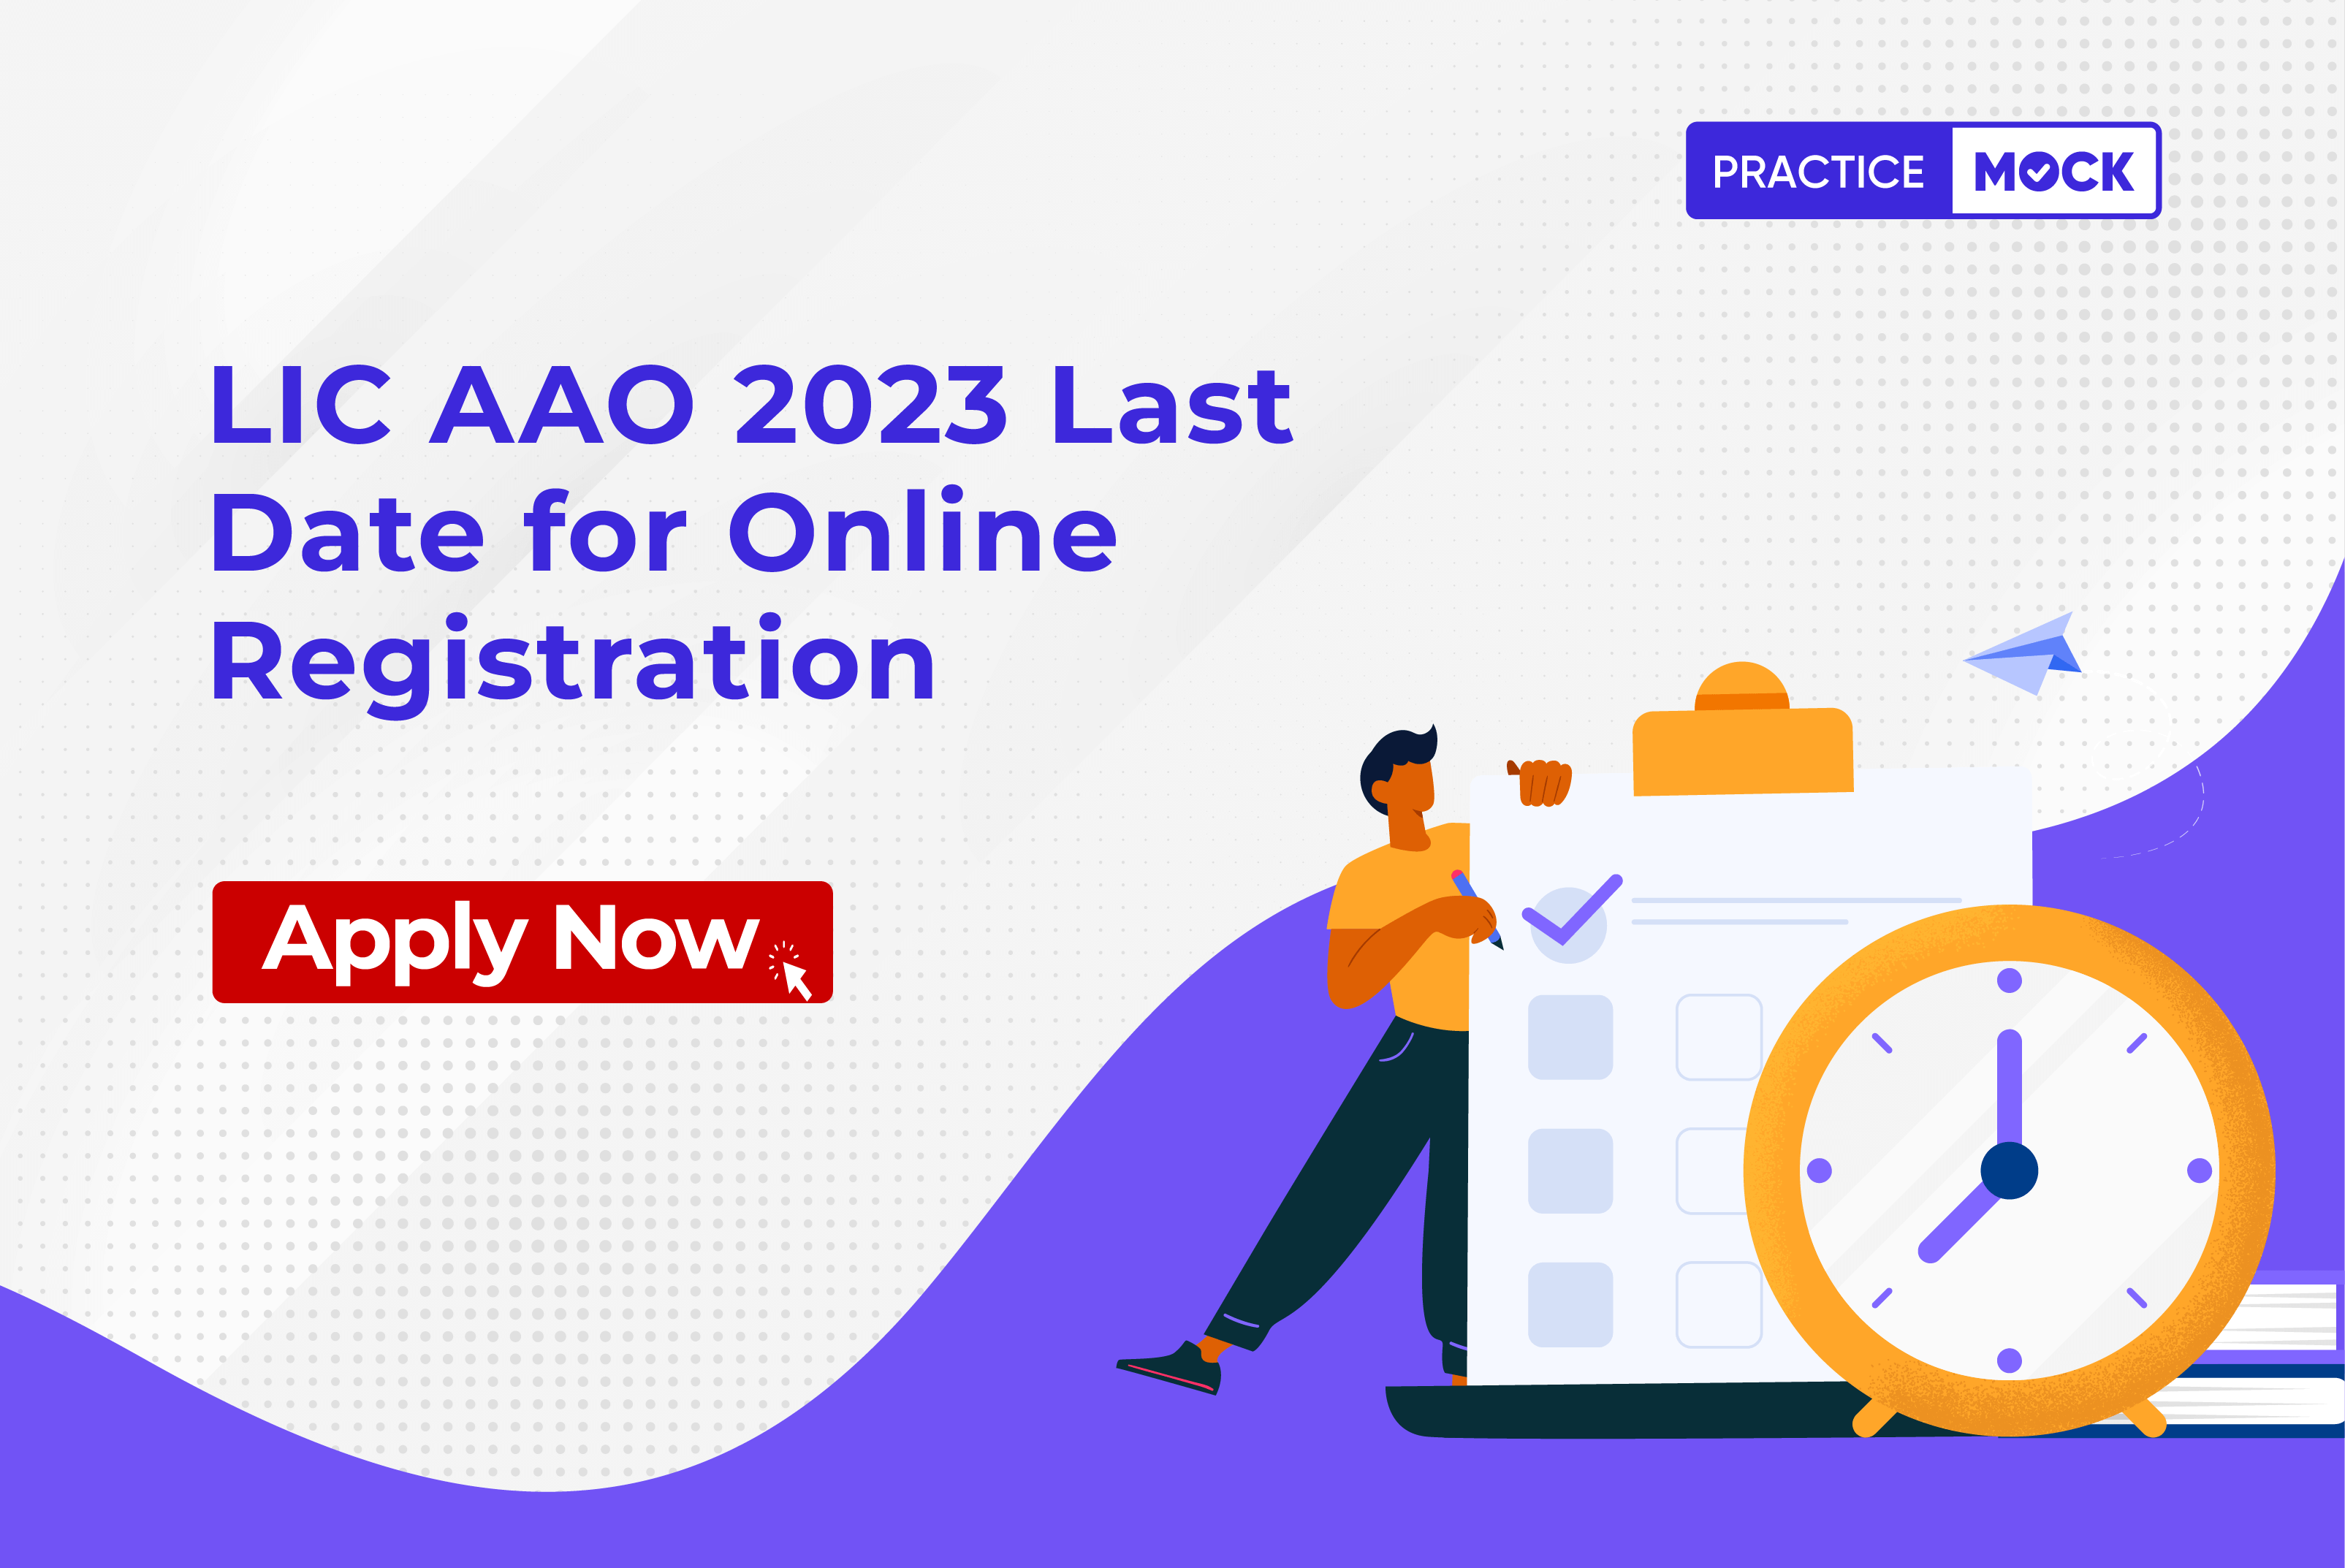 LIC AAO 2023 Last Date for Online Registration Apply Now PracticeMock